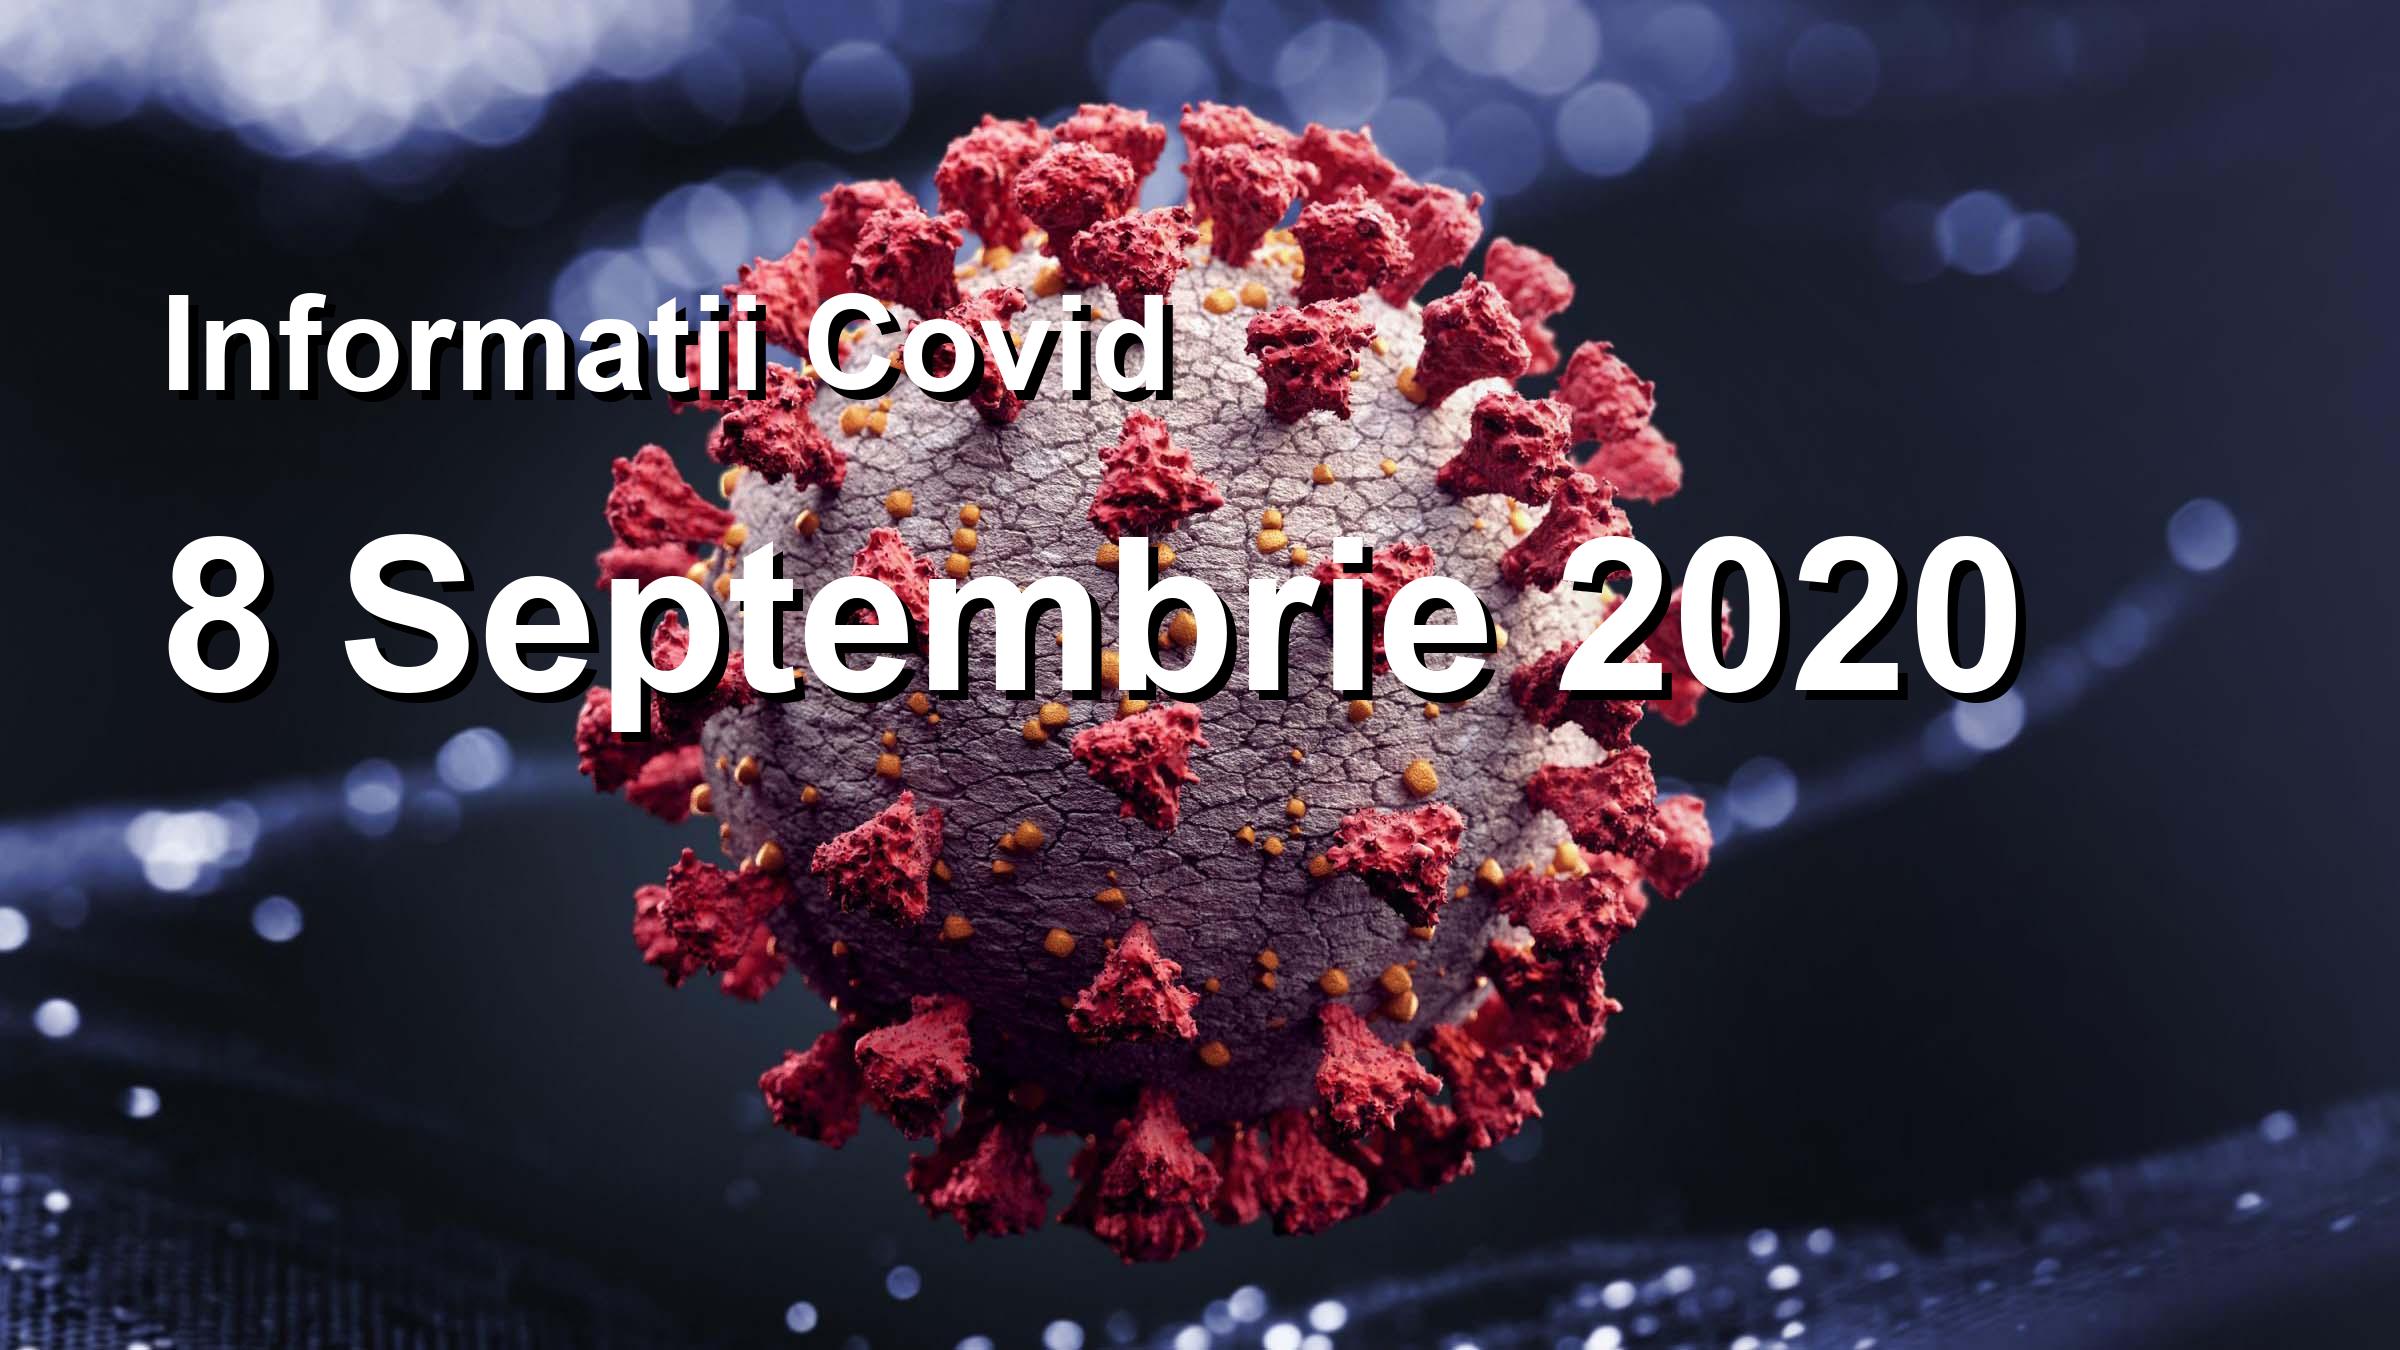 Informatii Covid-19 pentru 8 Septembrie 2020: 1136 infectari, 20552 teste. | Coronavirus Romania